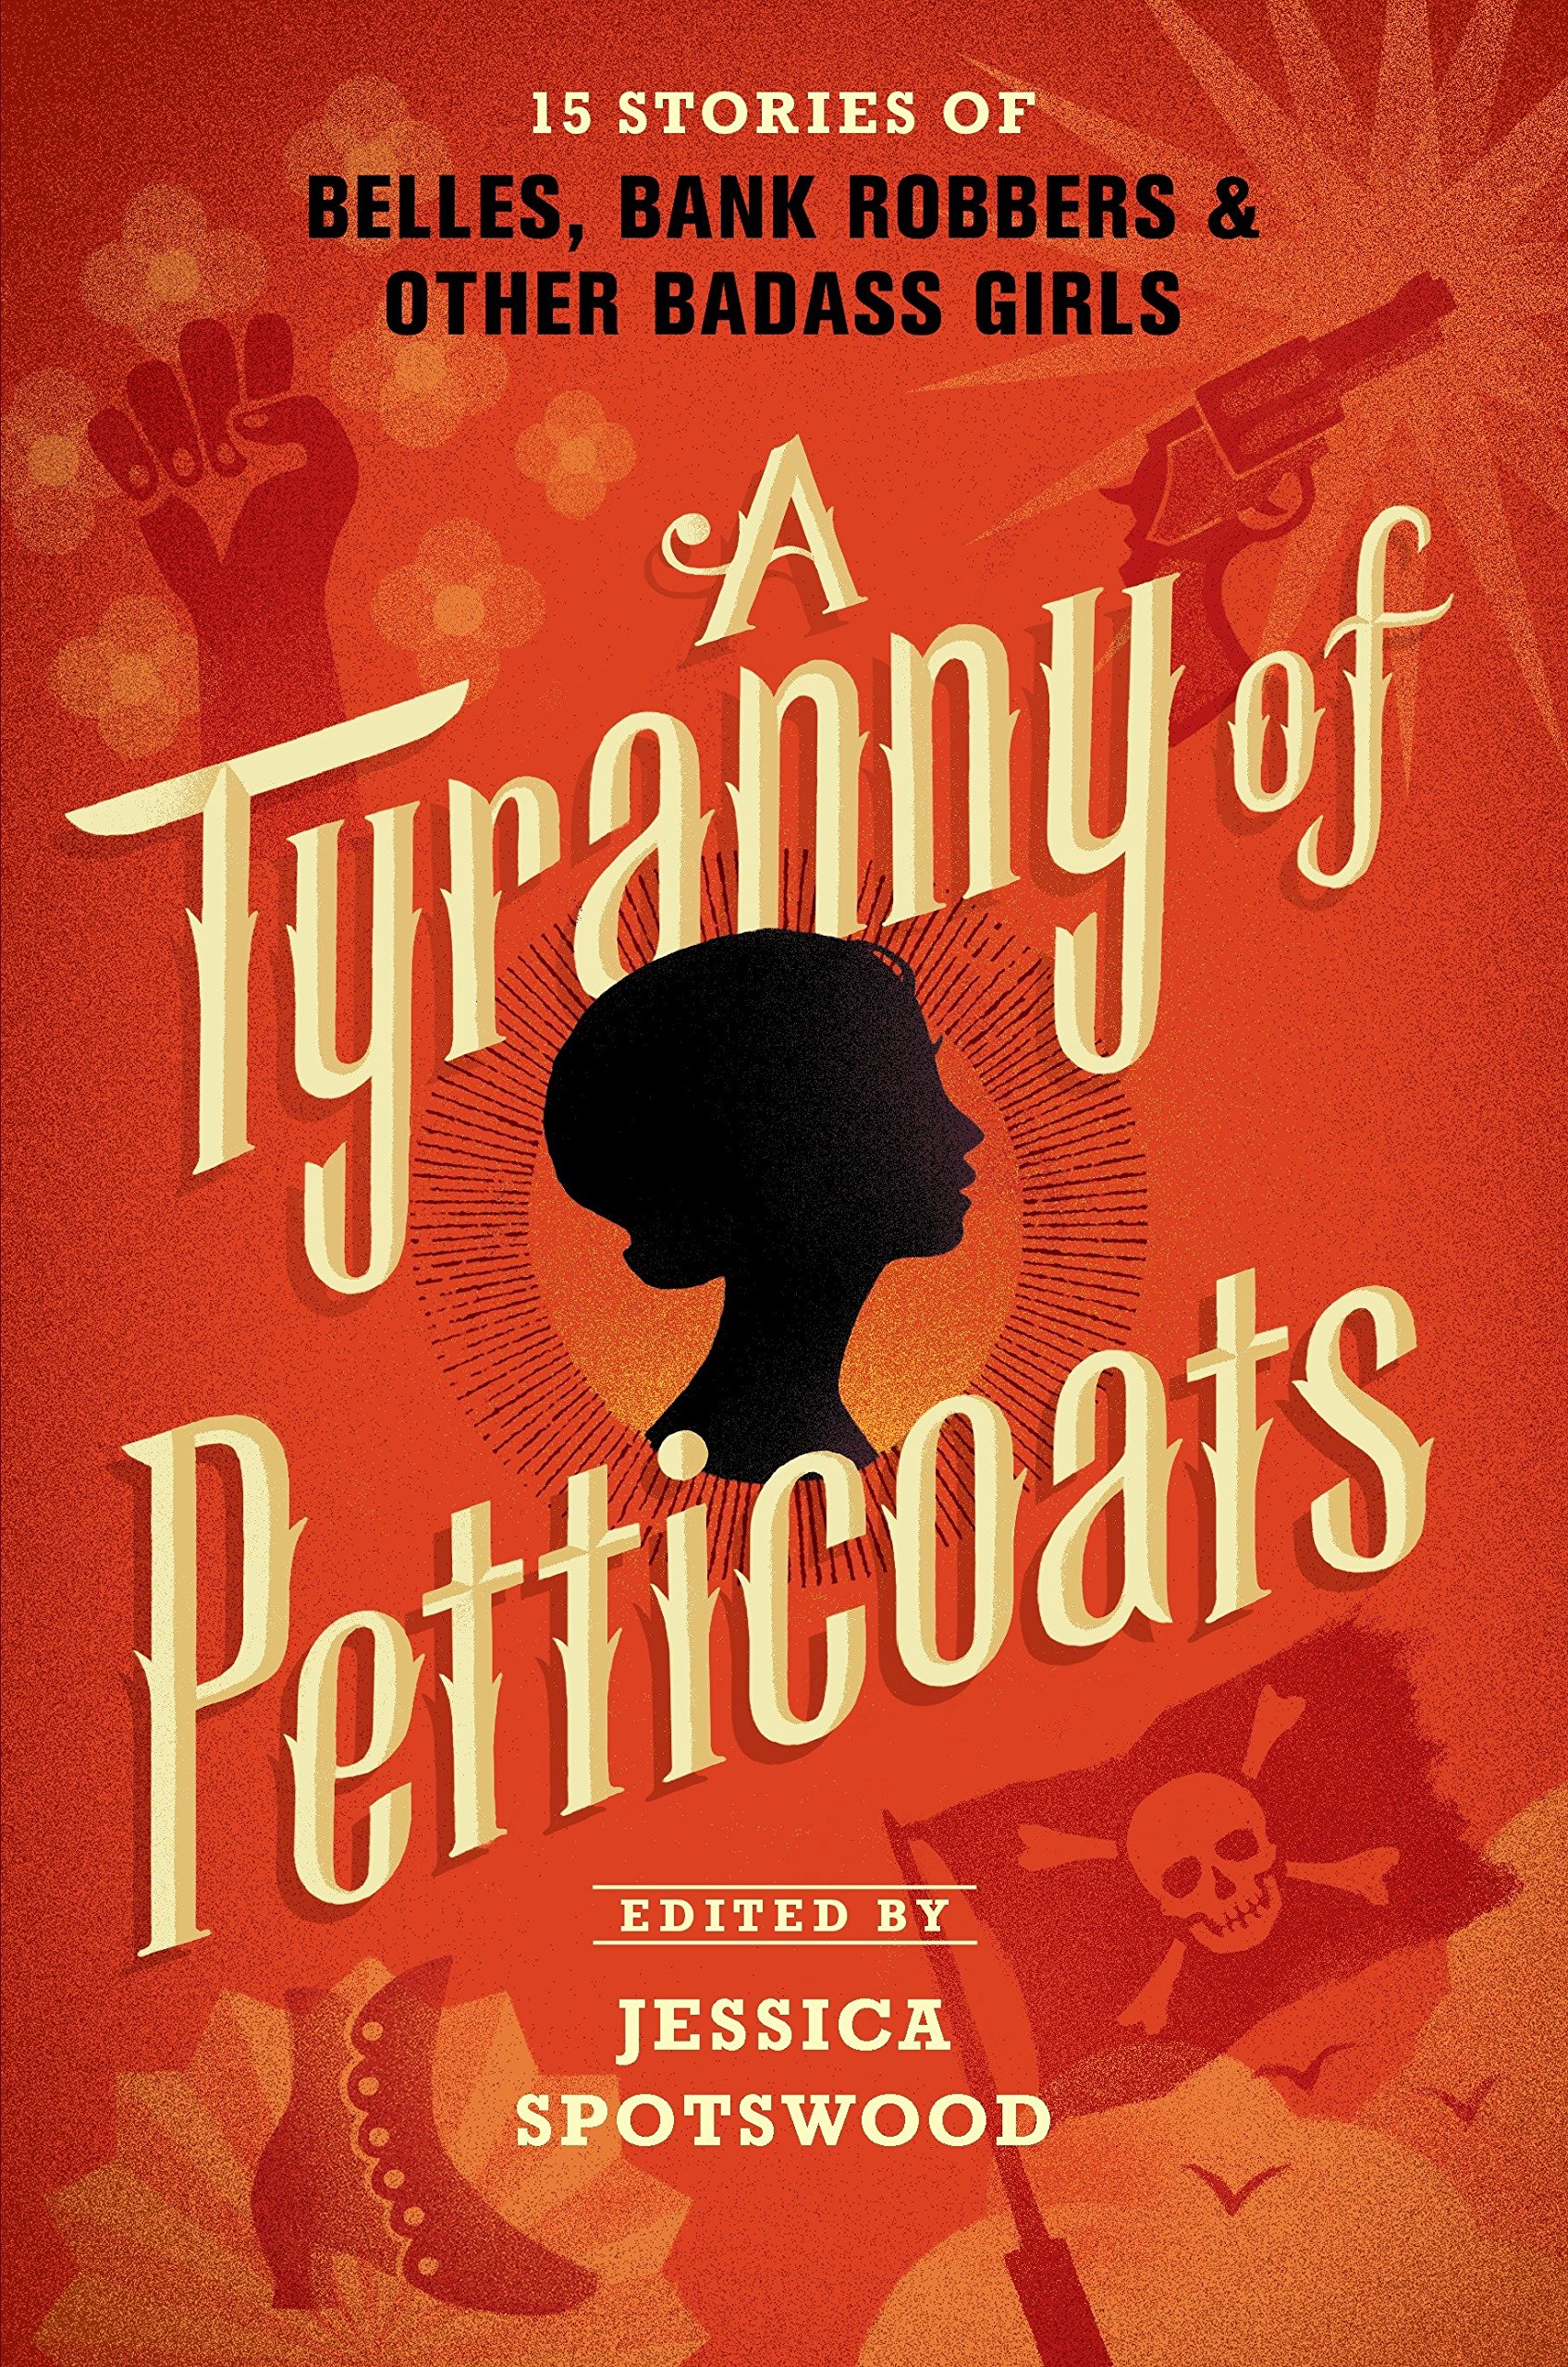 A Tyranny of Petticoats Short Stories